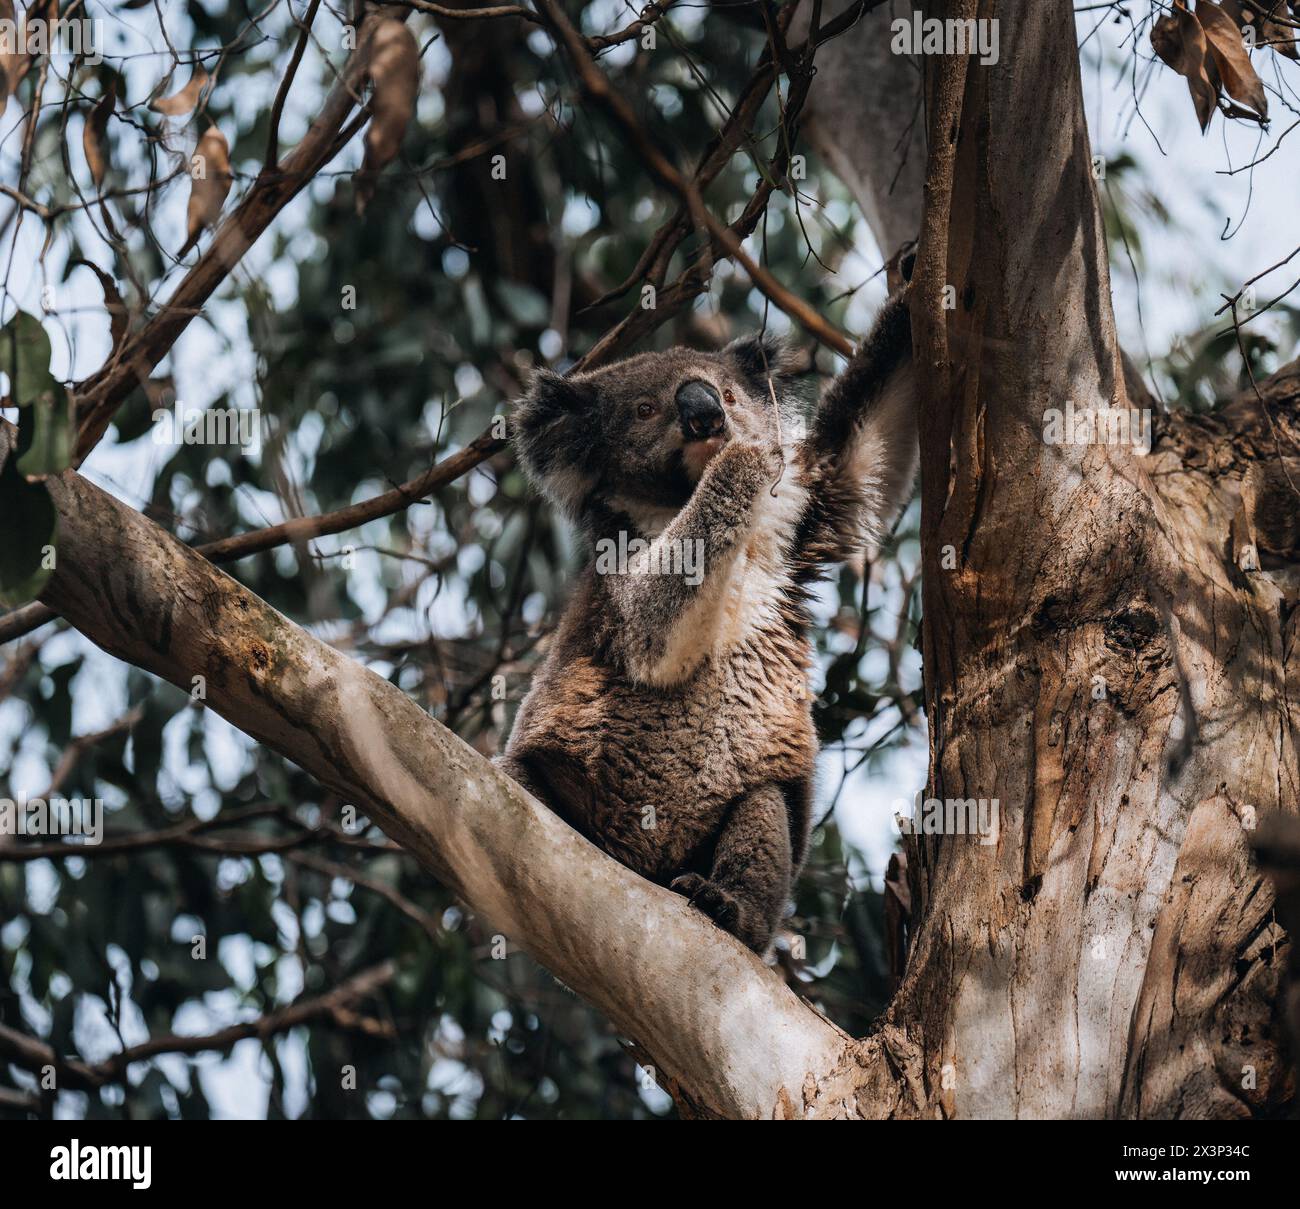 Koala à l'état sauvage avec un gommier sur la Great Ocean Road, Australie. Quelque part près de la rivière Kennet. Victoria, Australie. Banque D'Images